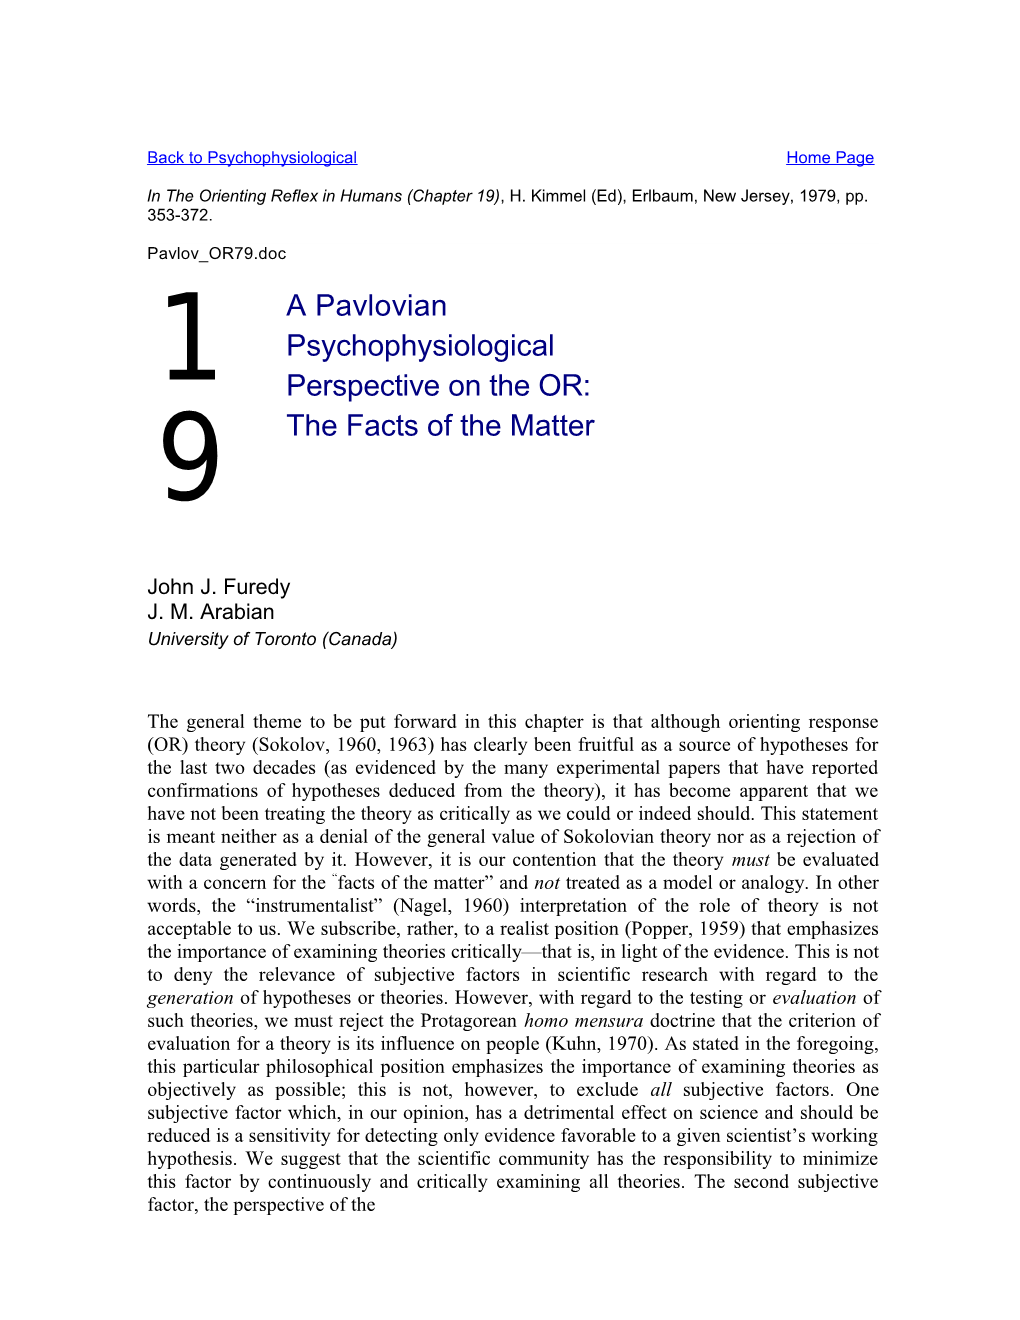 19. a Pavlovian Psychological Perspective